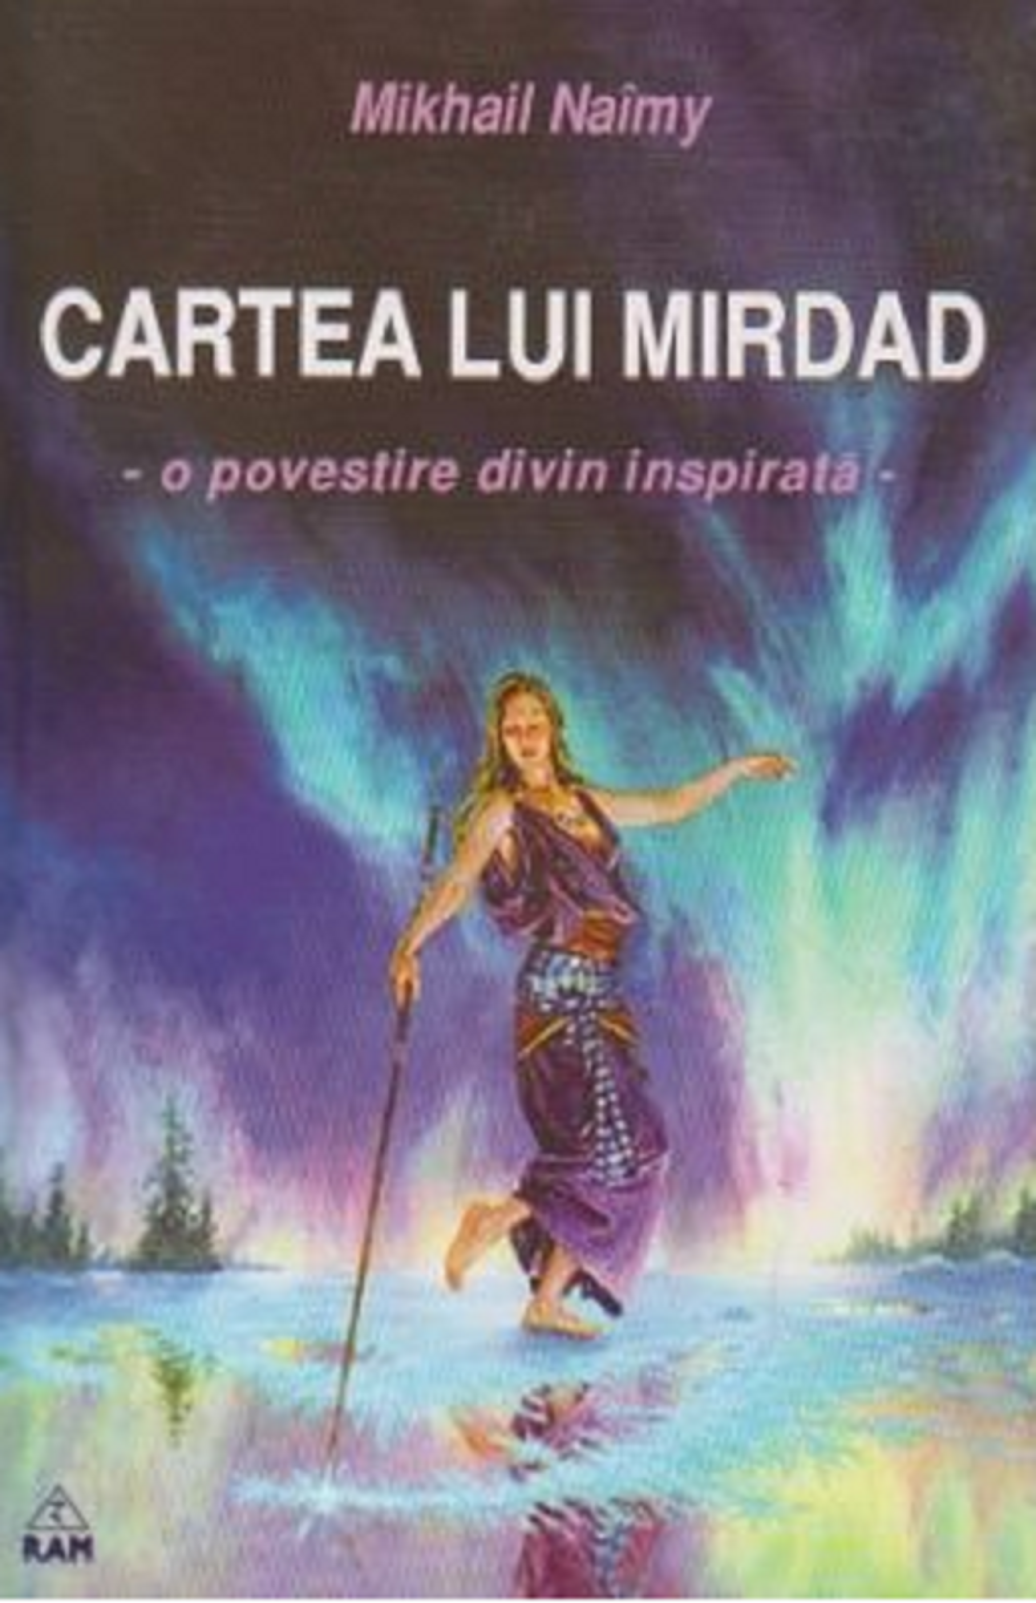 Cartea lui Mirdad | Mikhail Naimy De La Carturesti Carti Dezvoltare Personala 2023-09-28 3